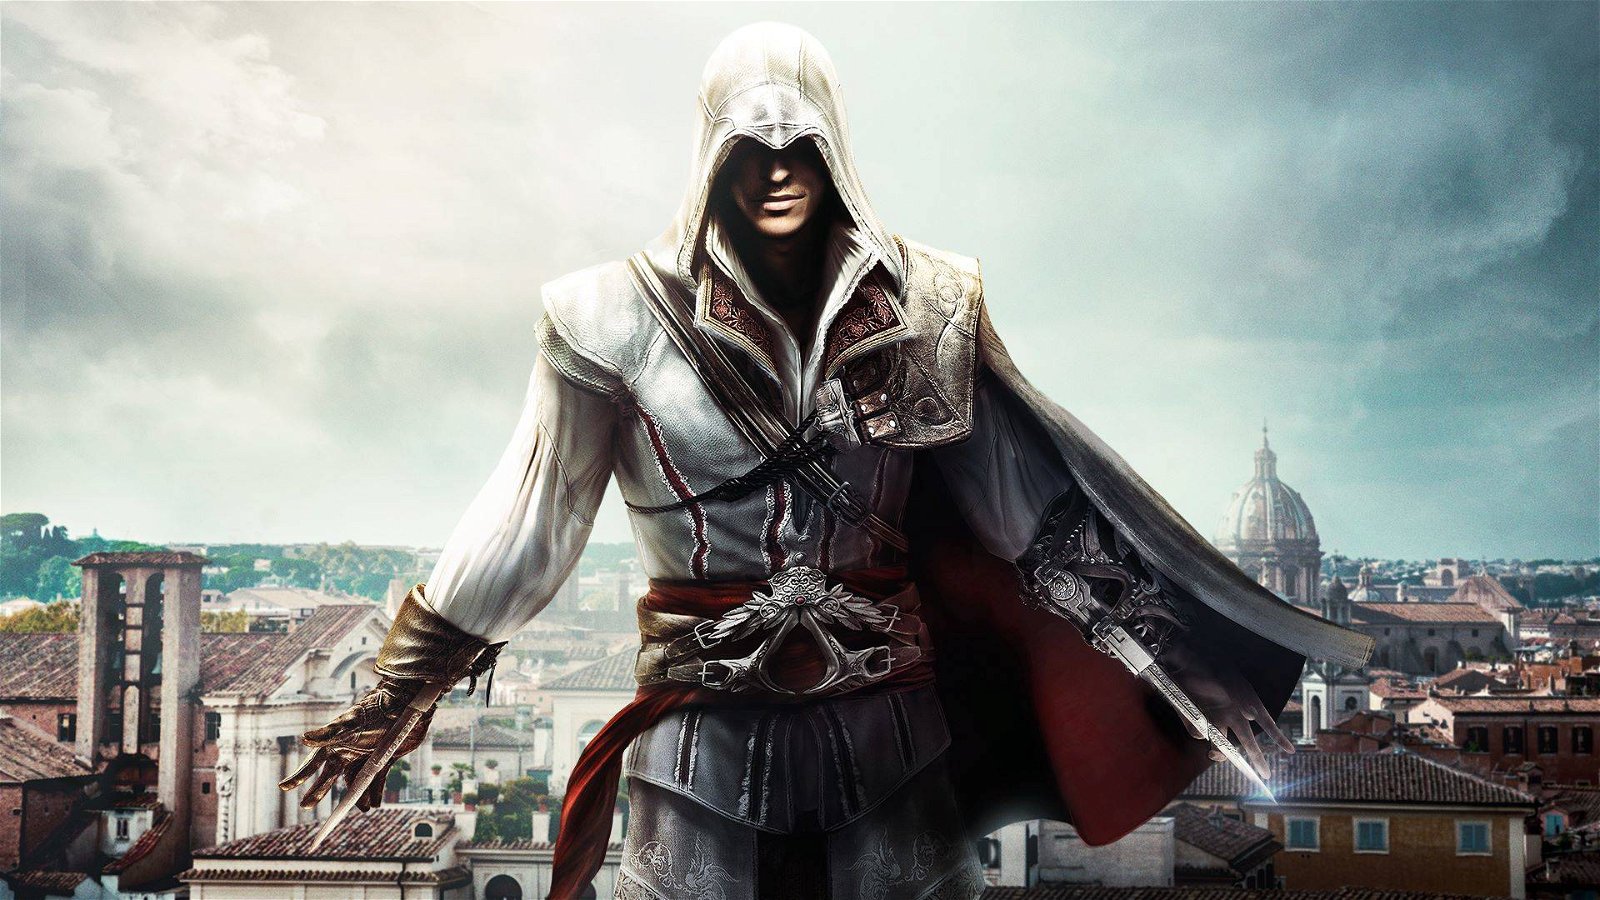 Immagine di Assassin's Creed torna in Italia? Non sarebbe affatto una cattiva idea!